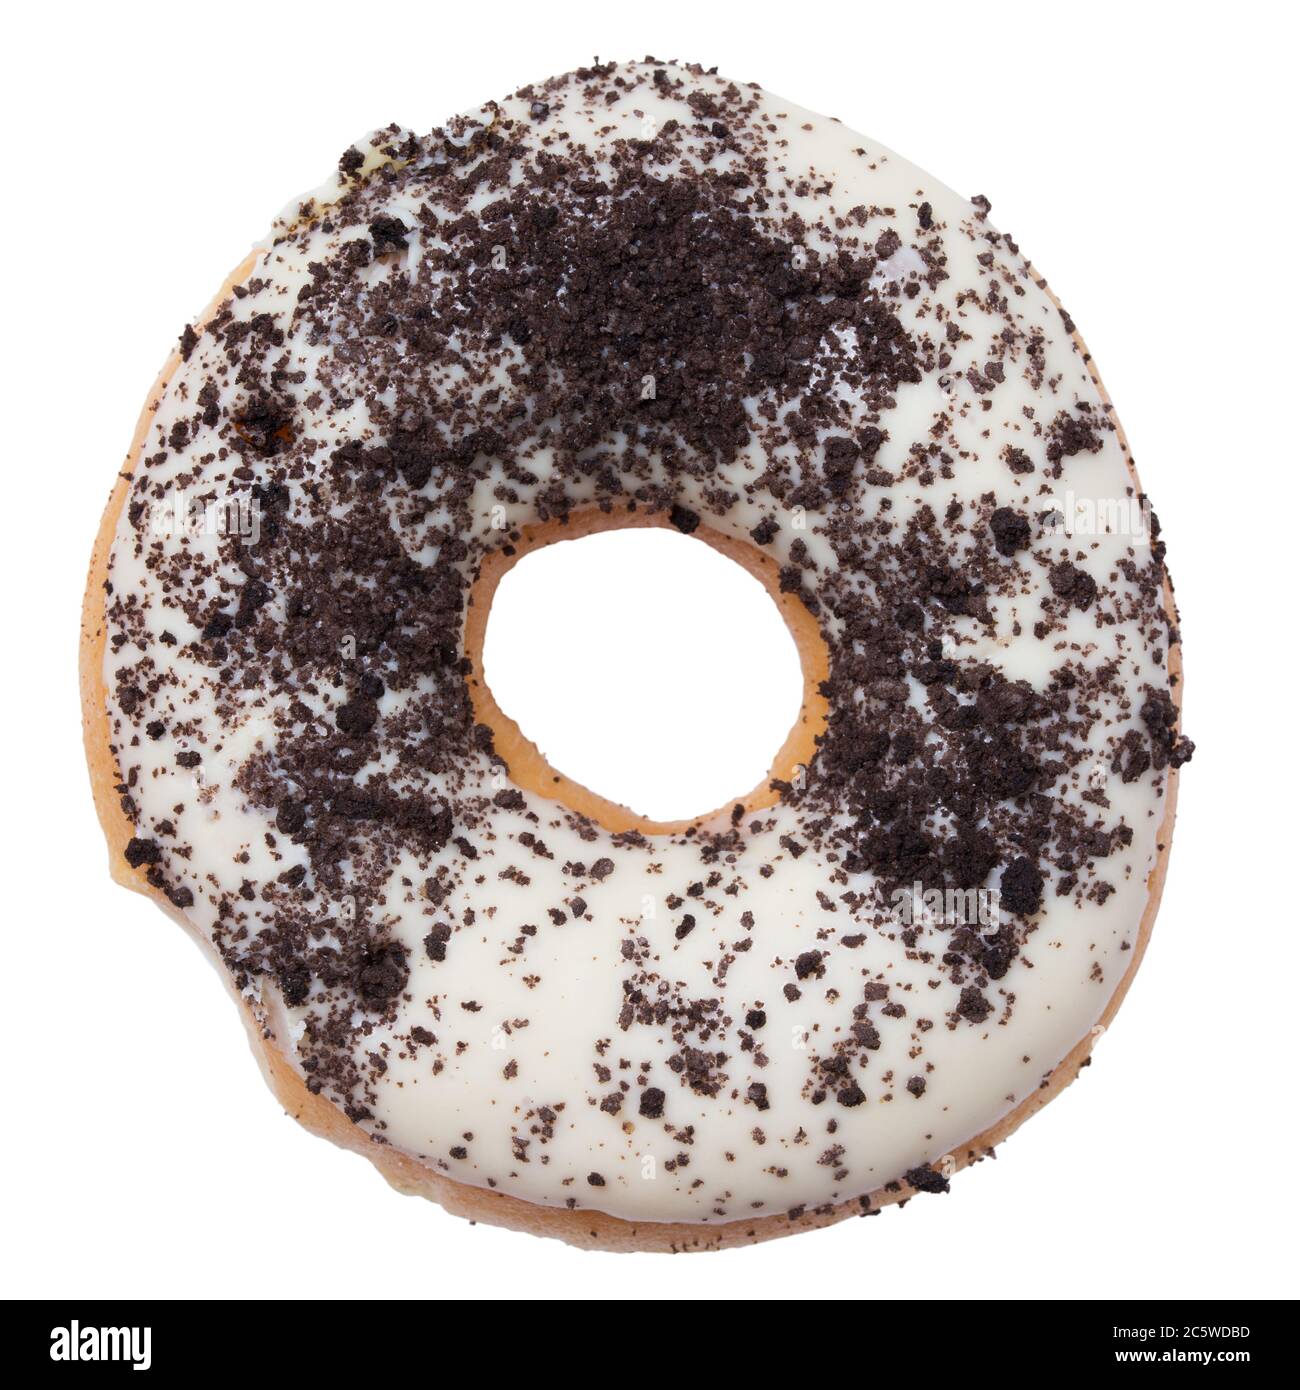 Frisch gebackenen leckeren Donut mit weißem Glasur und Schokolade Flocken isoliert auf weißem Hintergrund Stockfoto